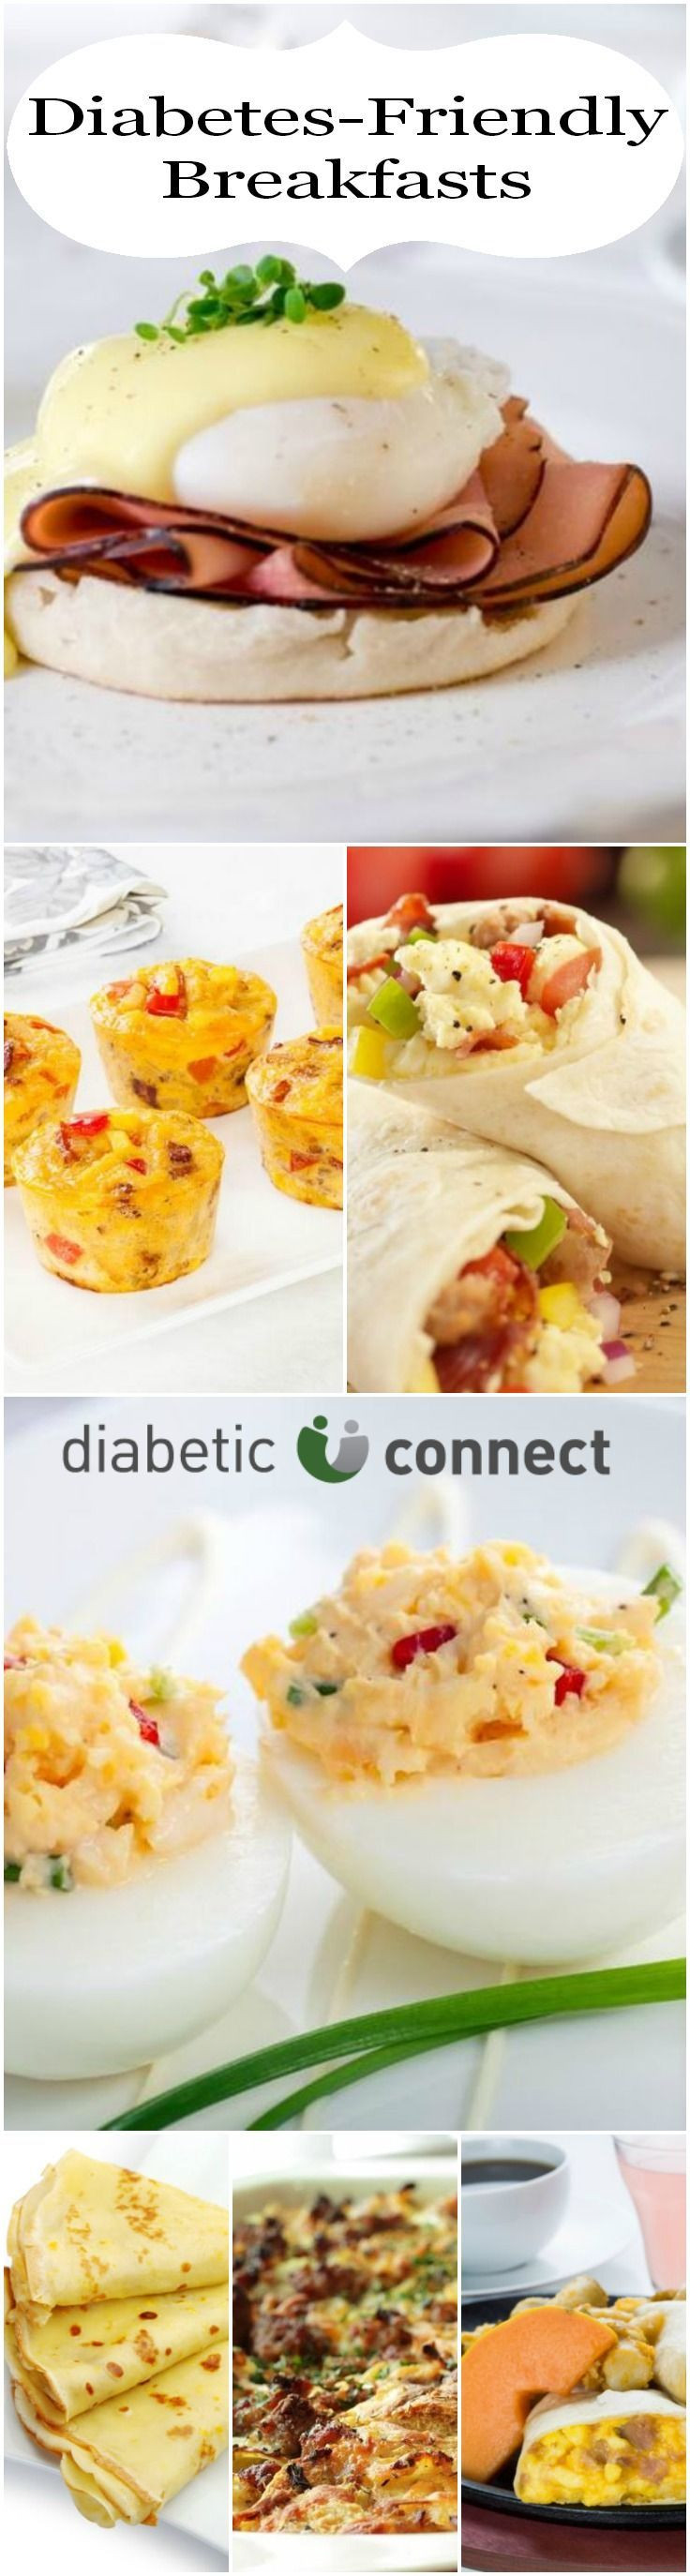 Diabetic Friendly Dinners
 Diabetic breakfast ideas